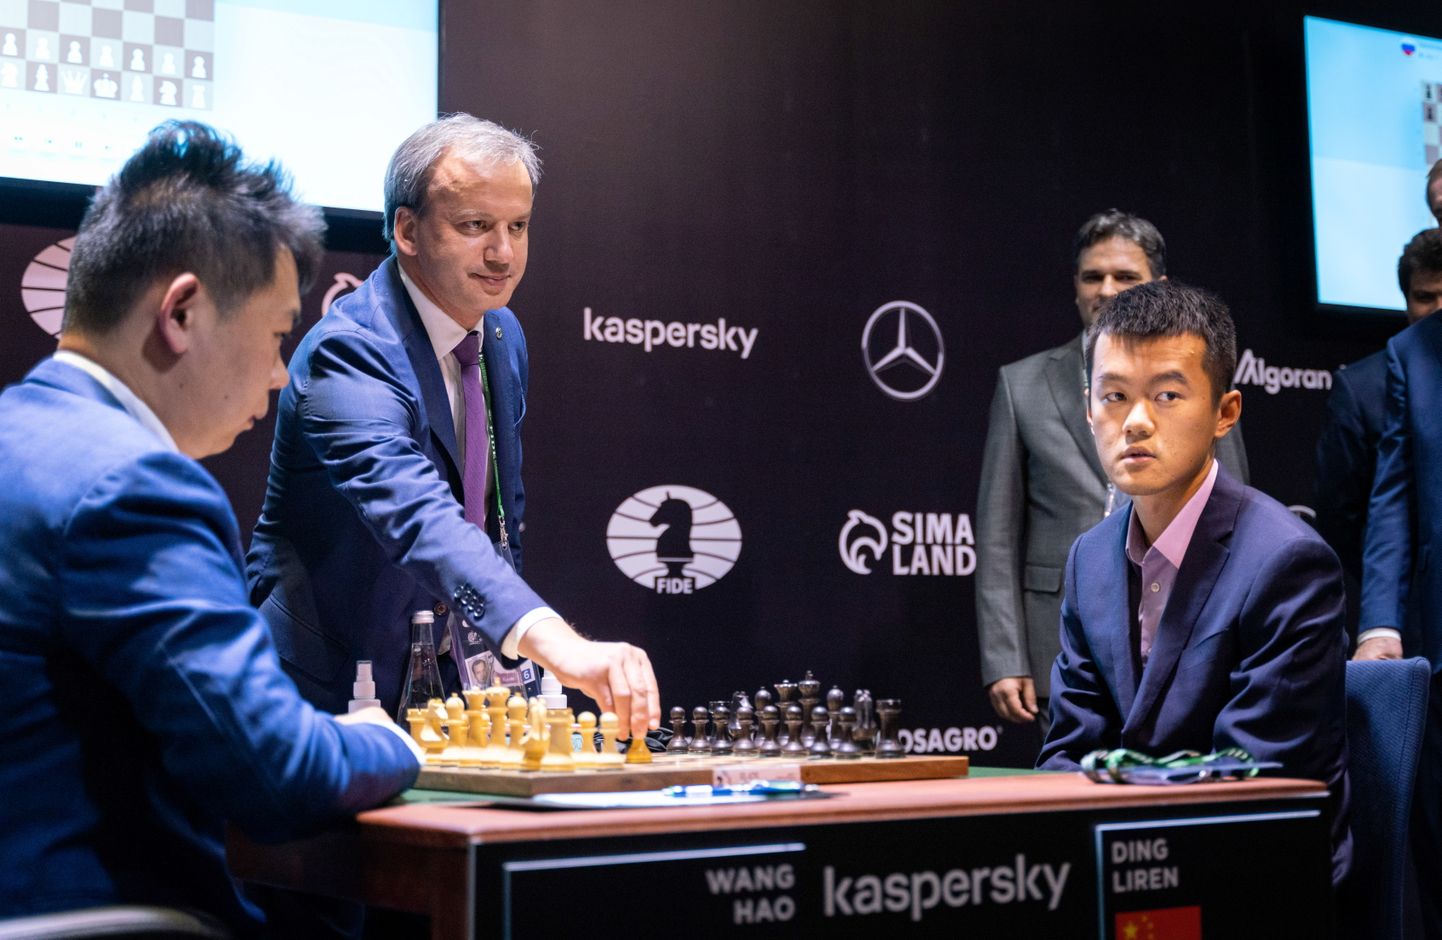 Rahvusvahelise Maleliidu FIDE president Arkadi Dvorkovitš avab Hiina suurmeistrite Wang Hao ja Ding Lireni partii kandidaatide turniiril mullu aprillis Venemaal Jekaterinburgis.